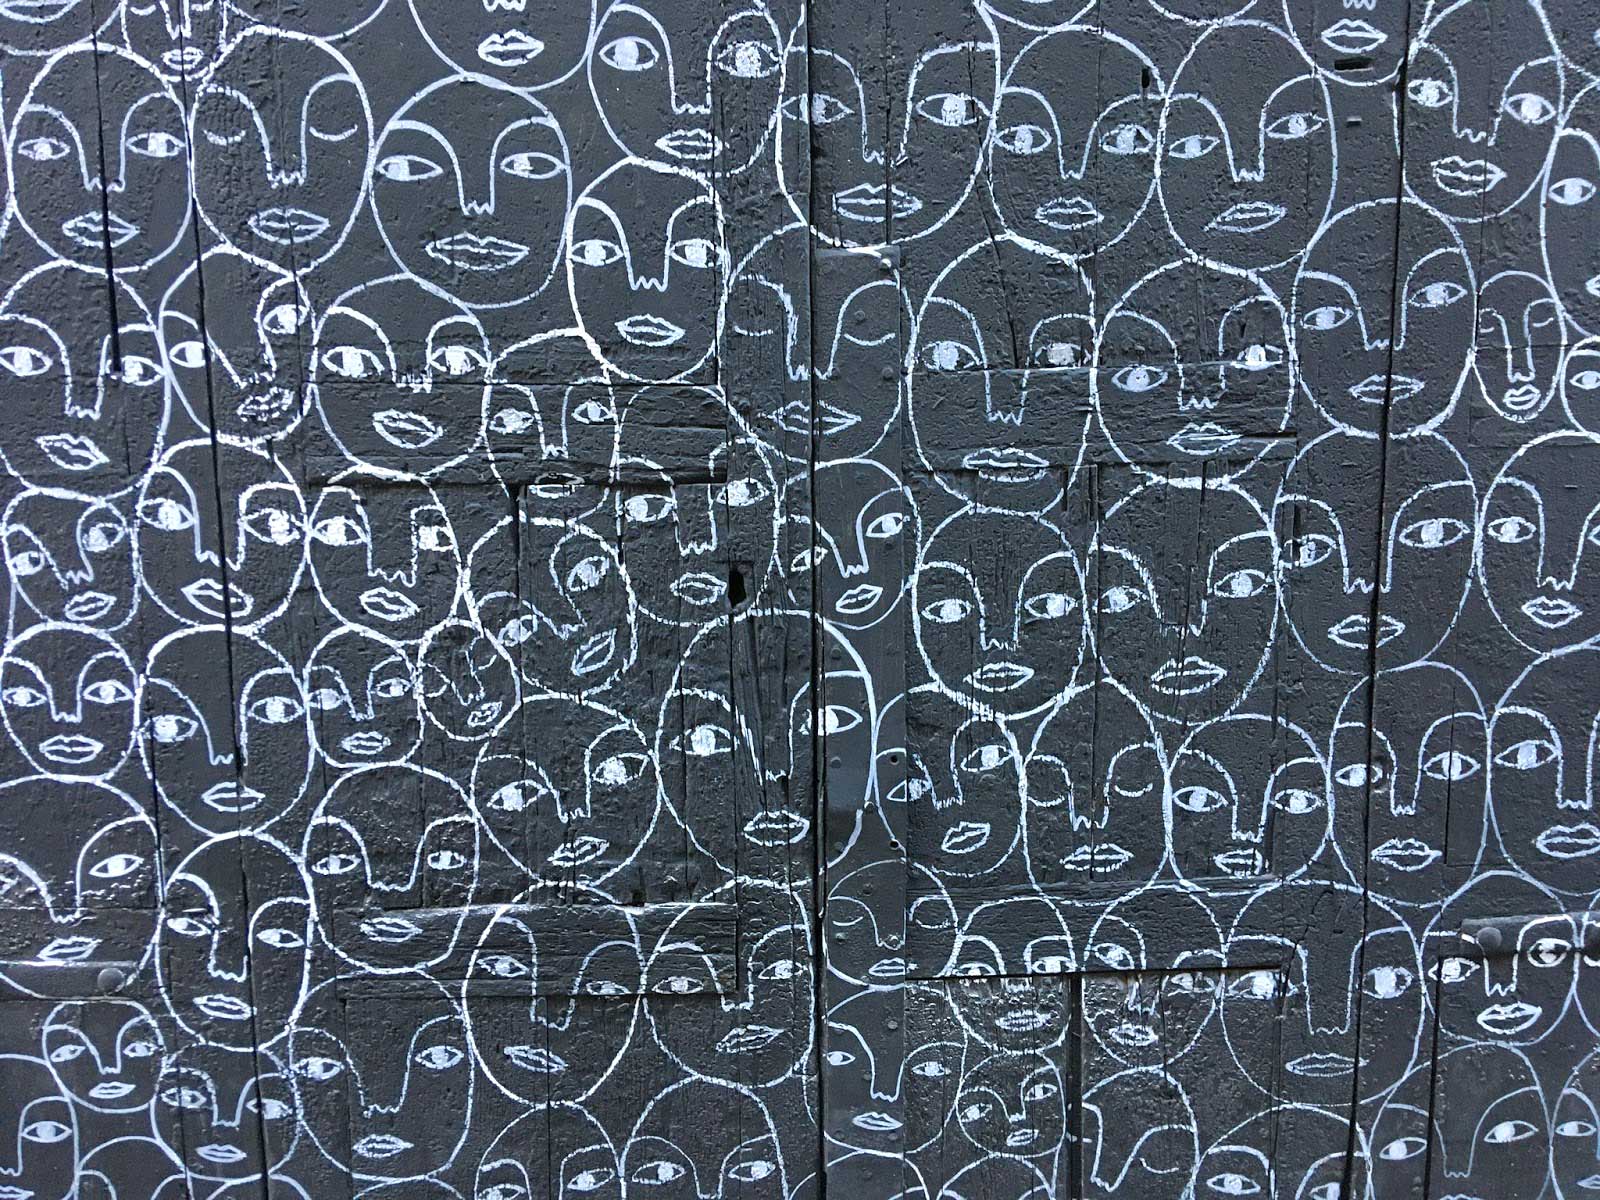 Caras en la calle Mozart, Gracia. Barcelona, 2019